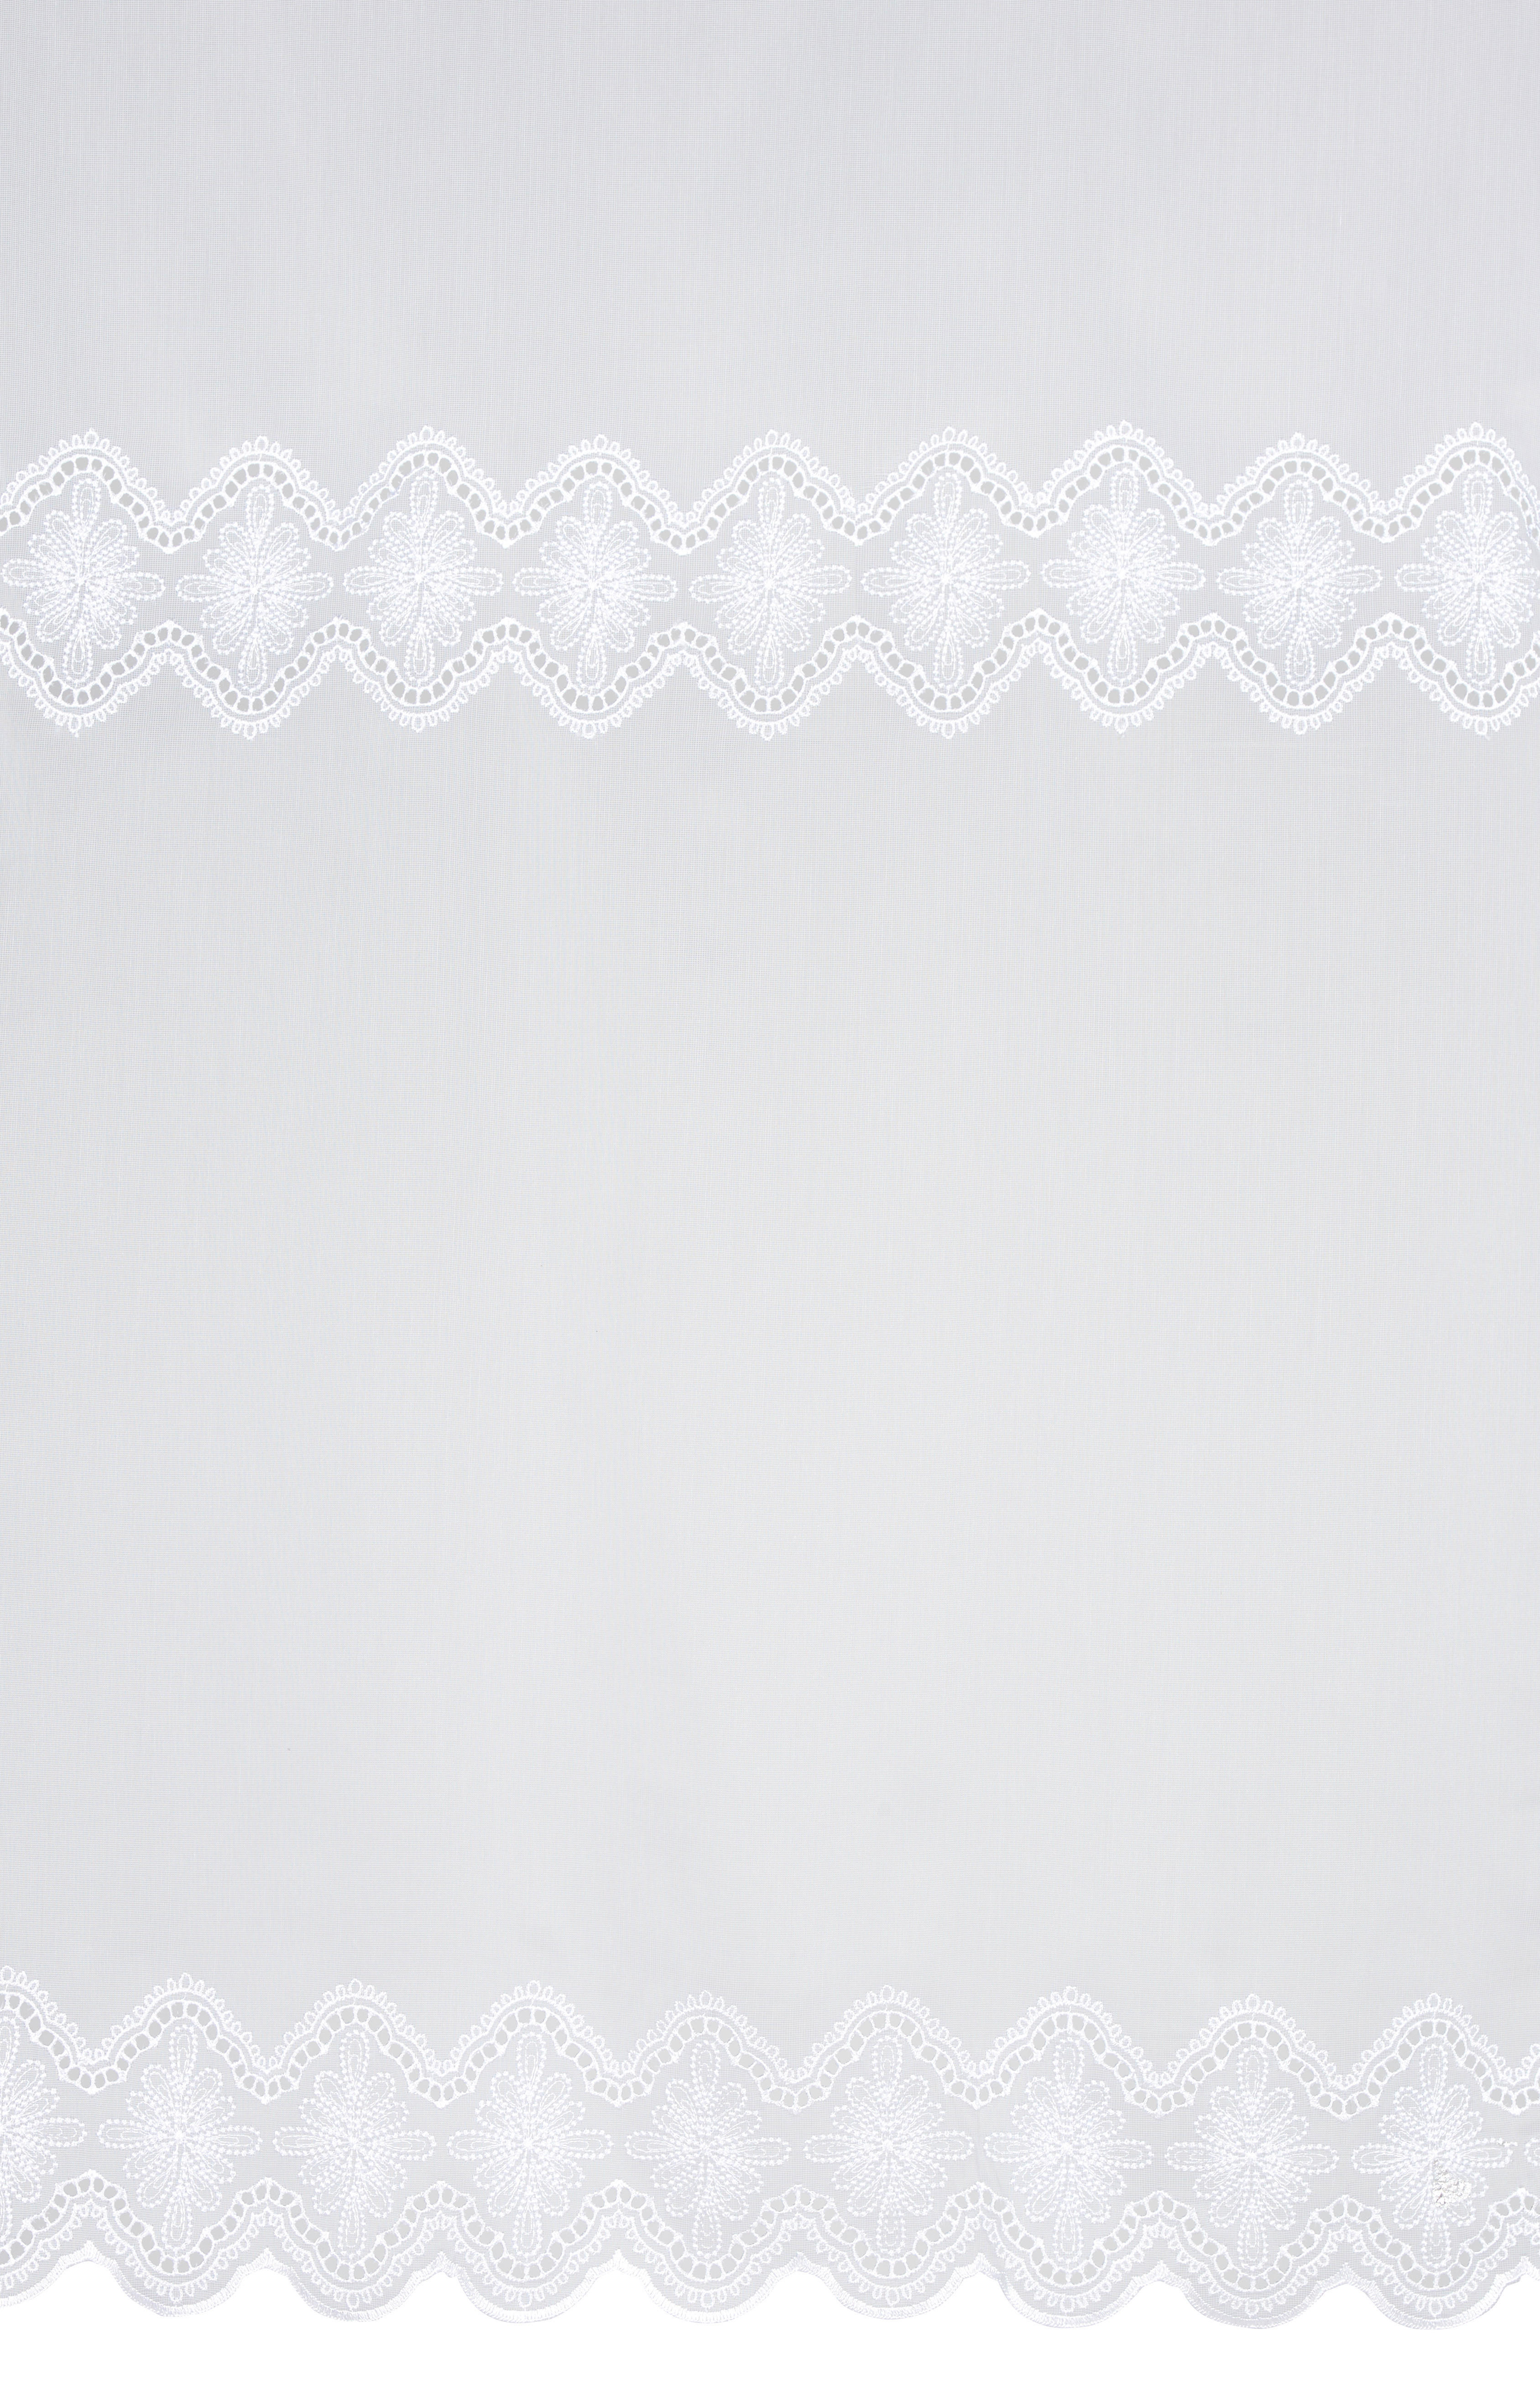 ZÁCLONA, polopriehľadné, 280 cm - biela, Konventionell, textil (280cm) - Esposa